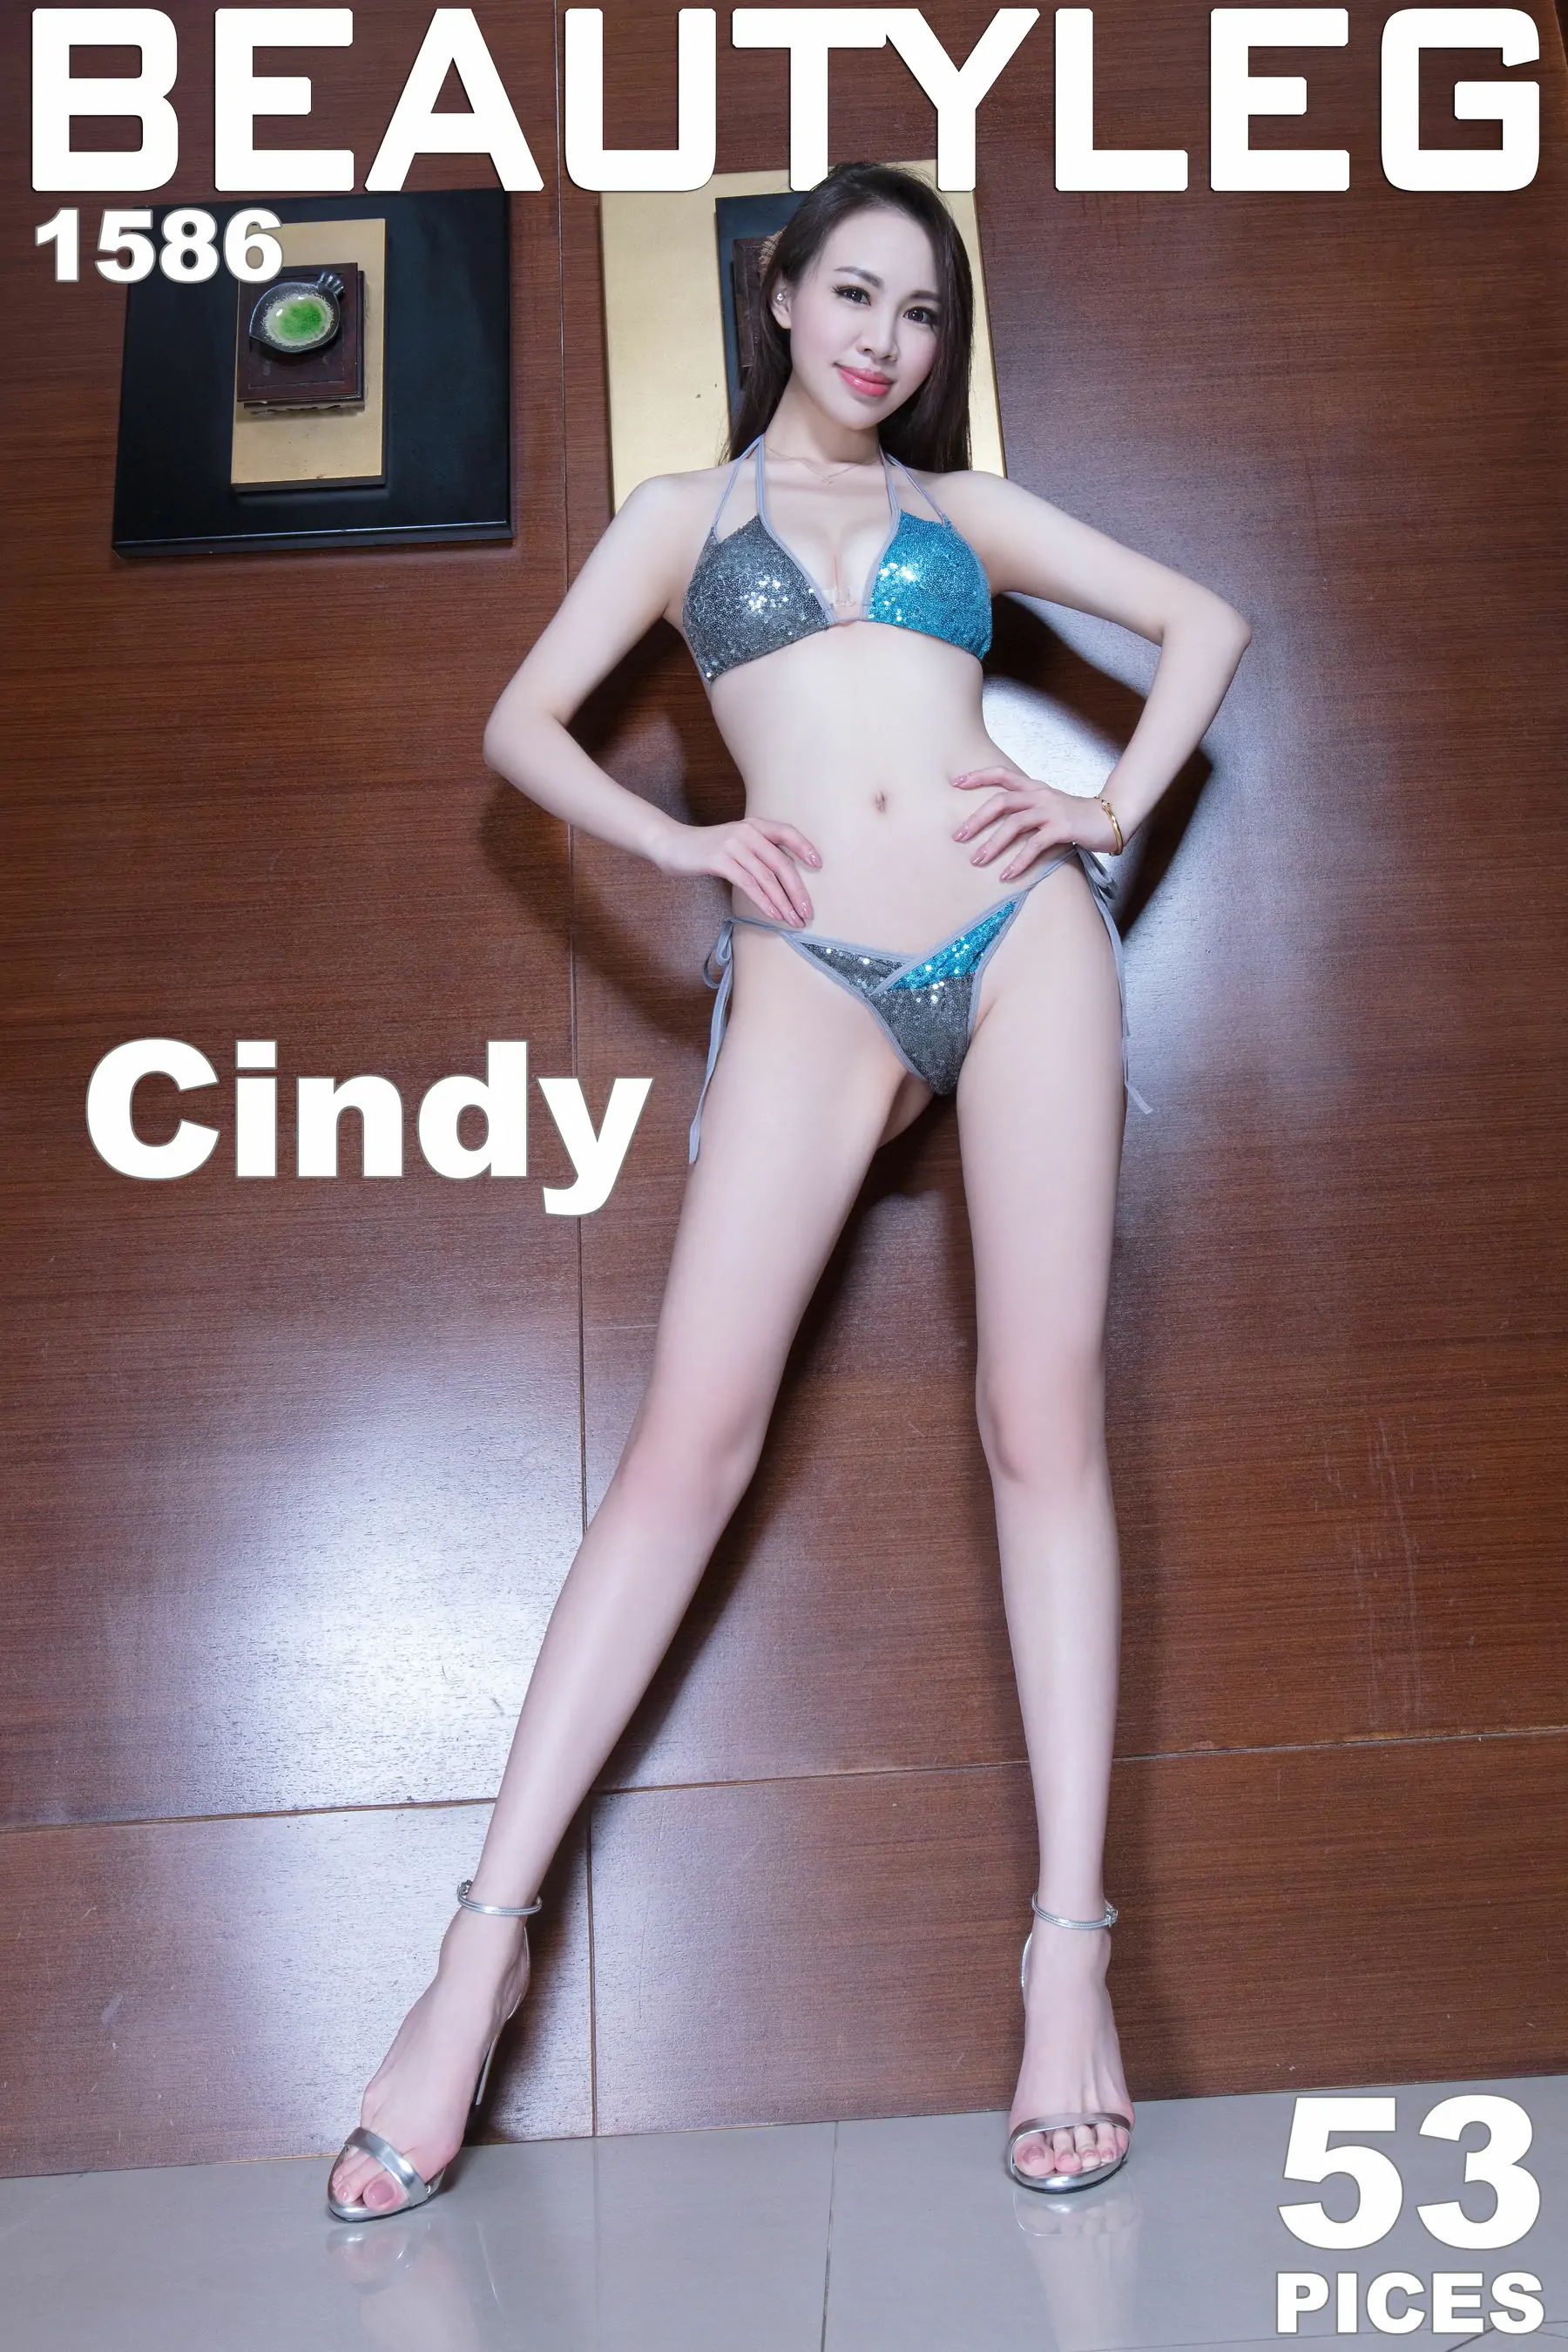 腿模Cindy《泳装高跟 黑丝美腿》 [Beautyleg] No.1586 